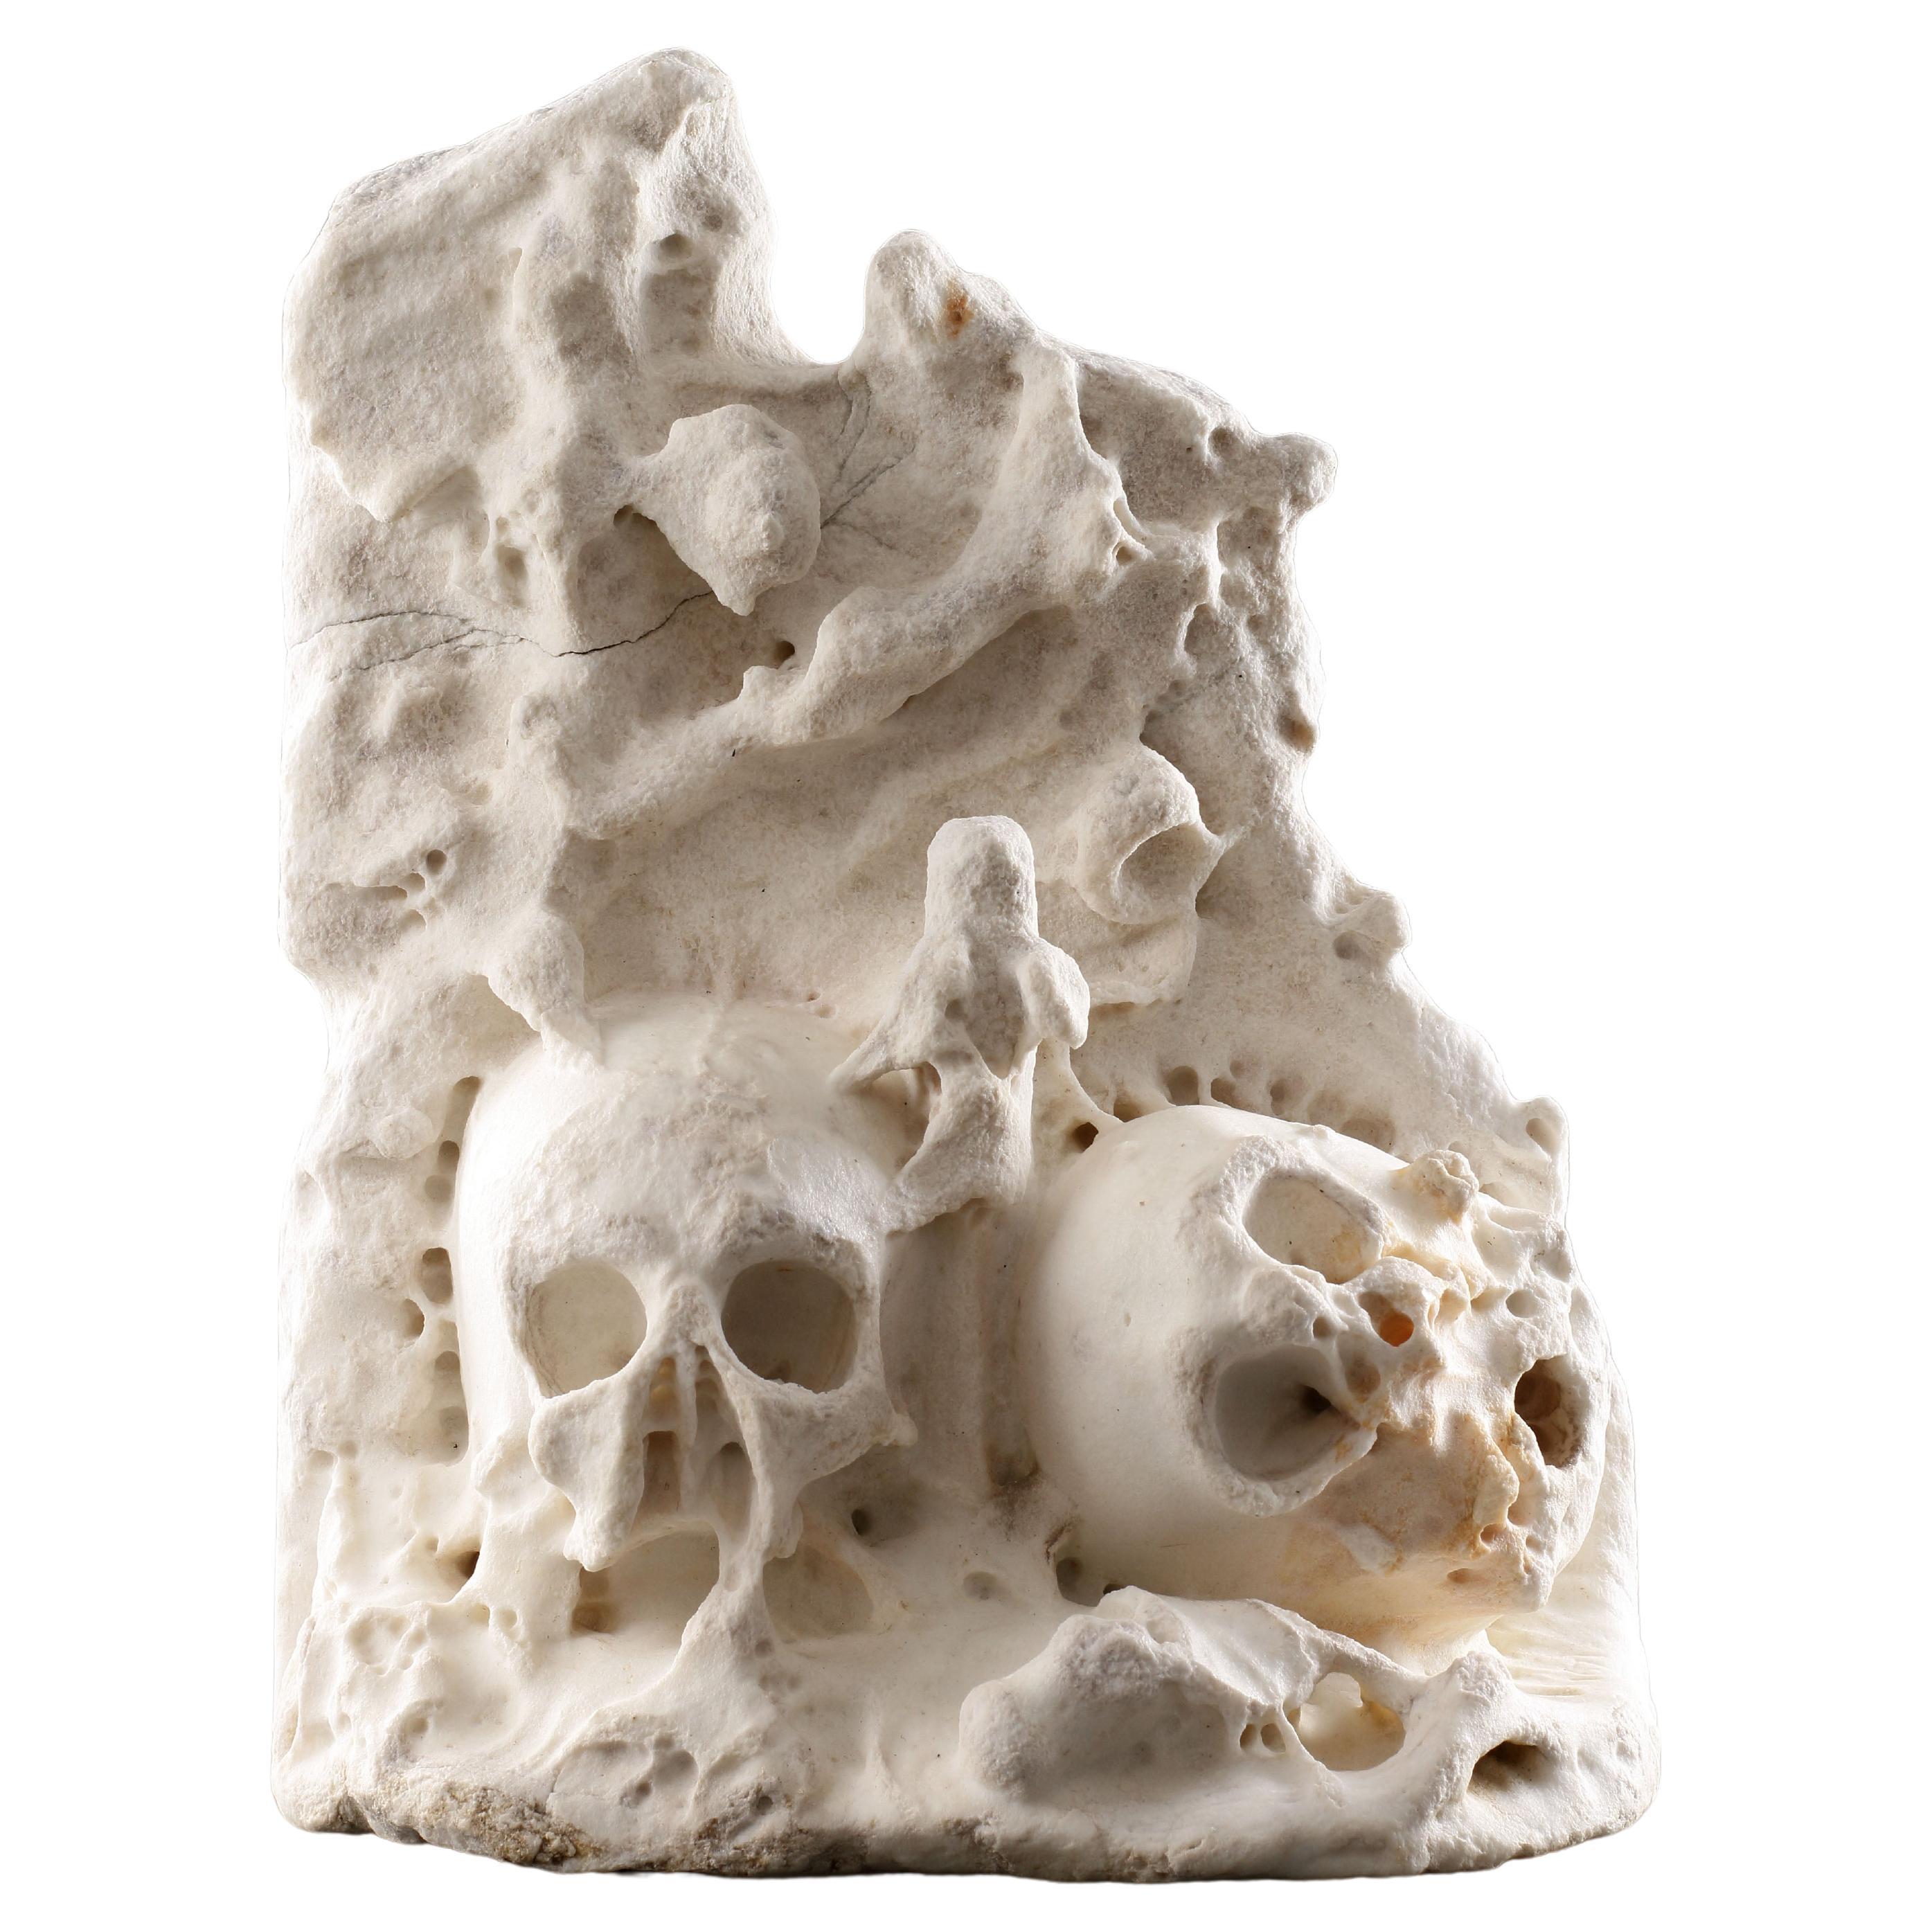 Rare et inhabituelle châsse anglaise sculptée "Memento Mori" avec deux crânes humains